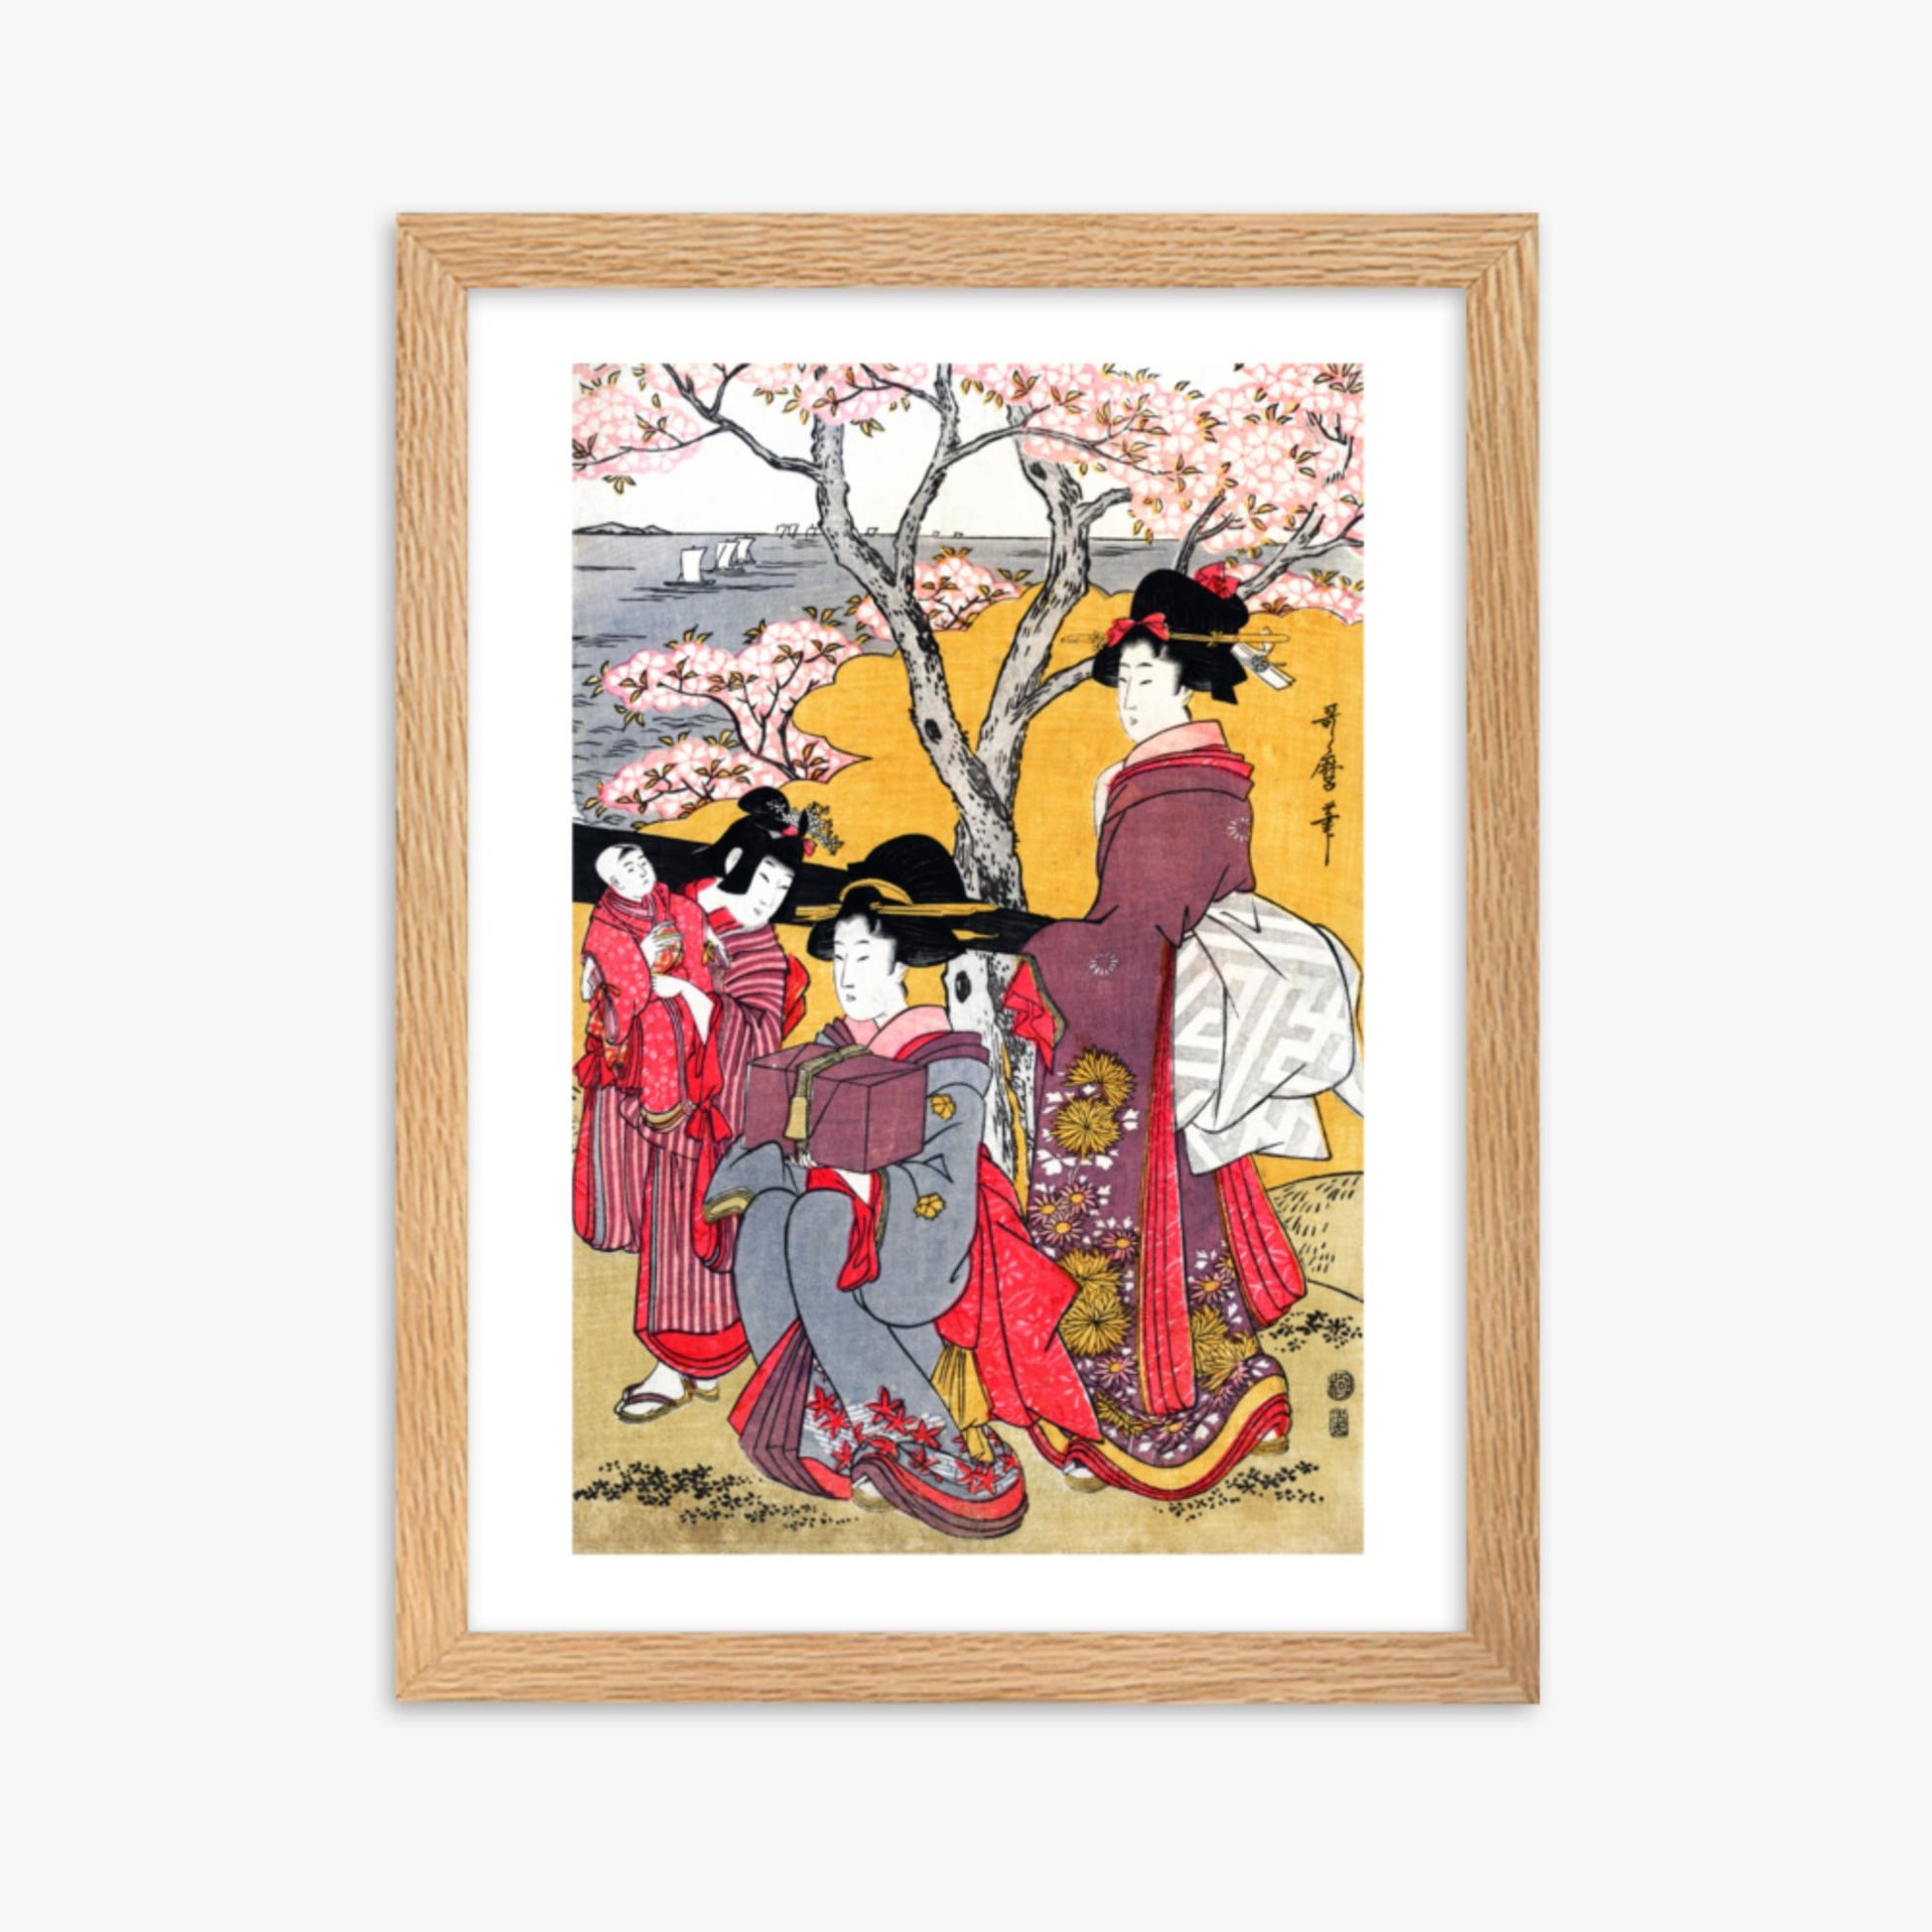 Kitagawa Utamaro - Cherry-viewing at Gotenyama 30x40 cm Poster With Oak Frame